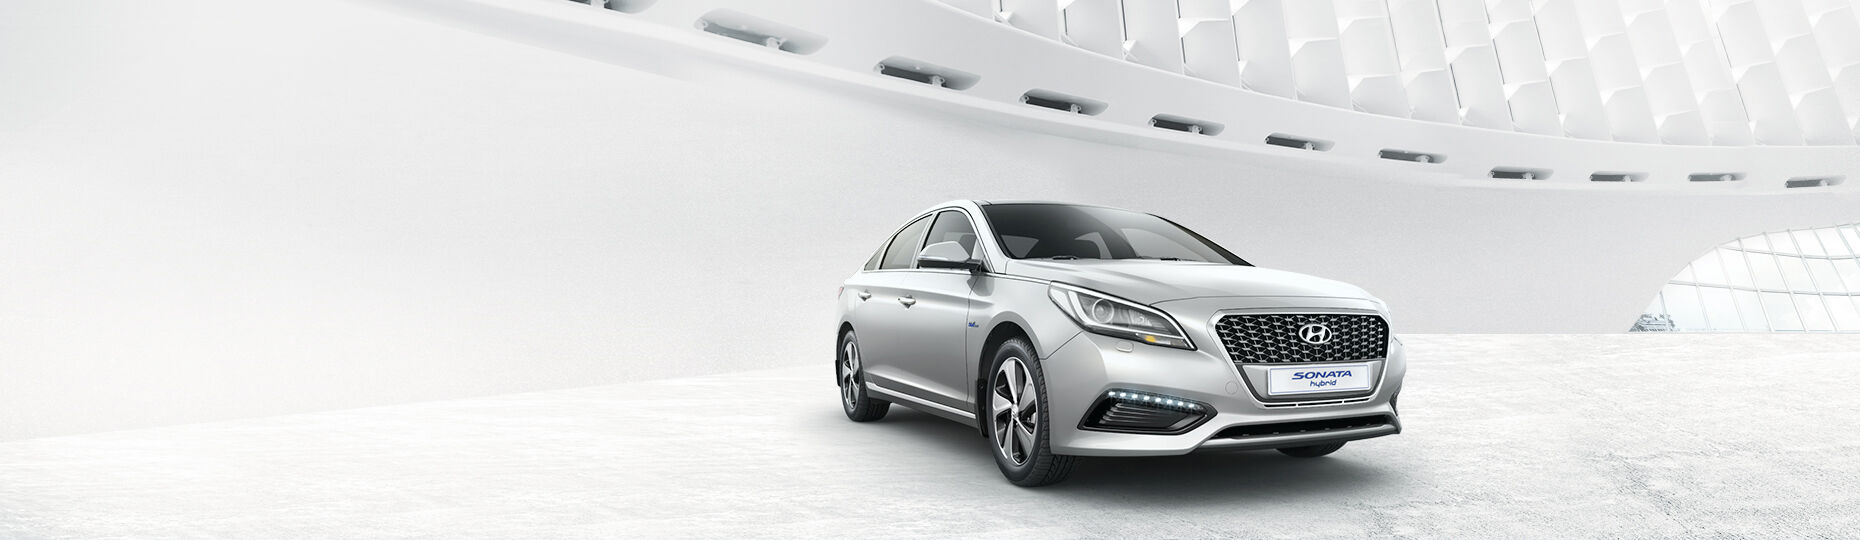 Hyundai Sonata Hybrid performance - Find a Car